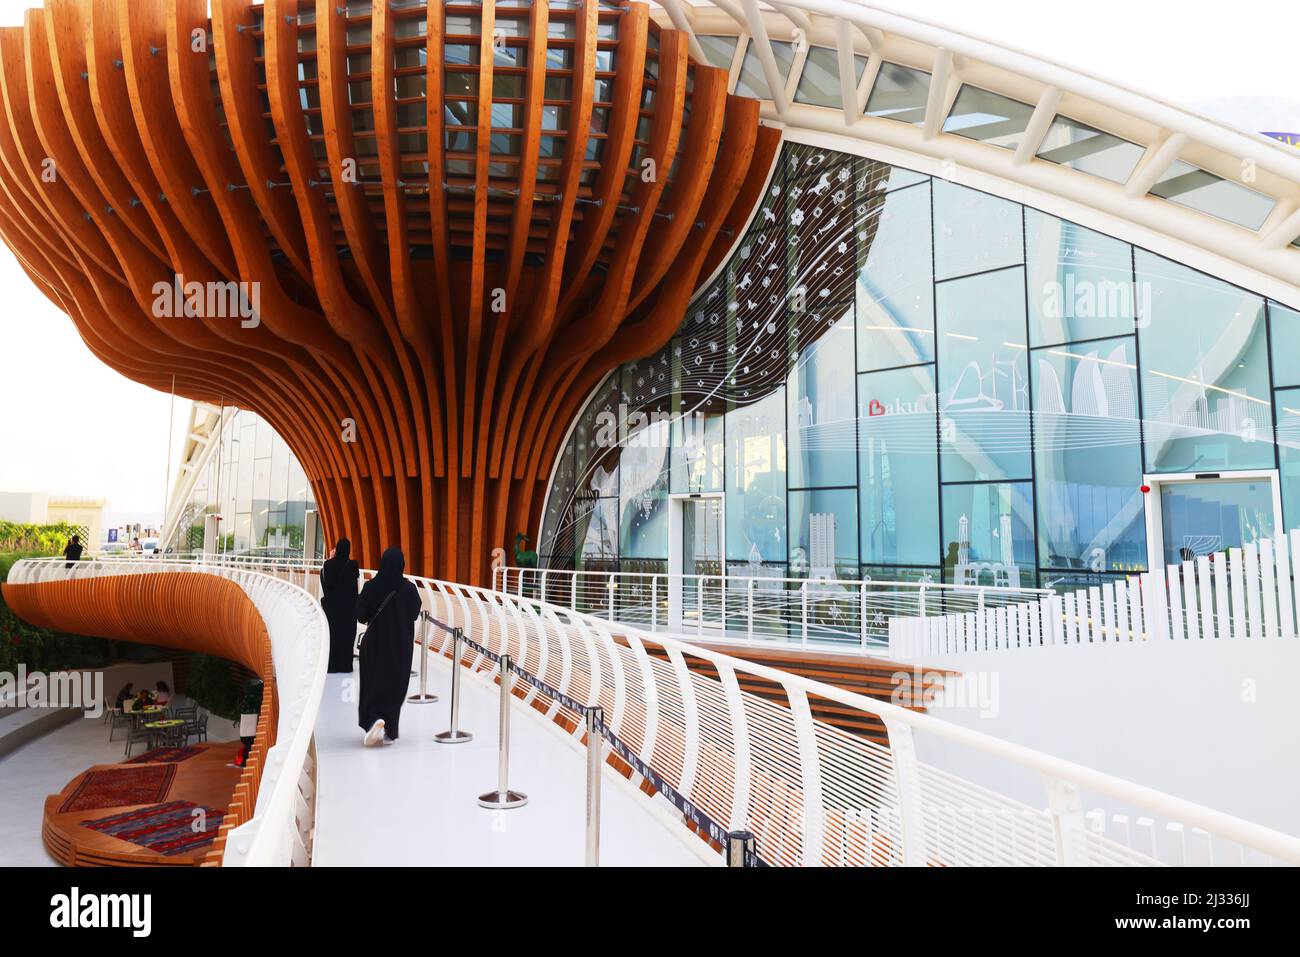 Dubai Expo, moderne Architektur, Weltausstellung, Kunst, Modernes Design aus Metall, Holz und Stahl im Aserbaidschan-Pavillon, Sustainability District Foto Stock